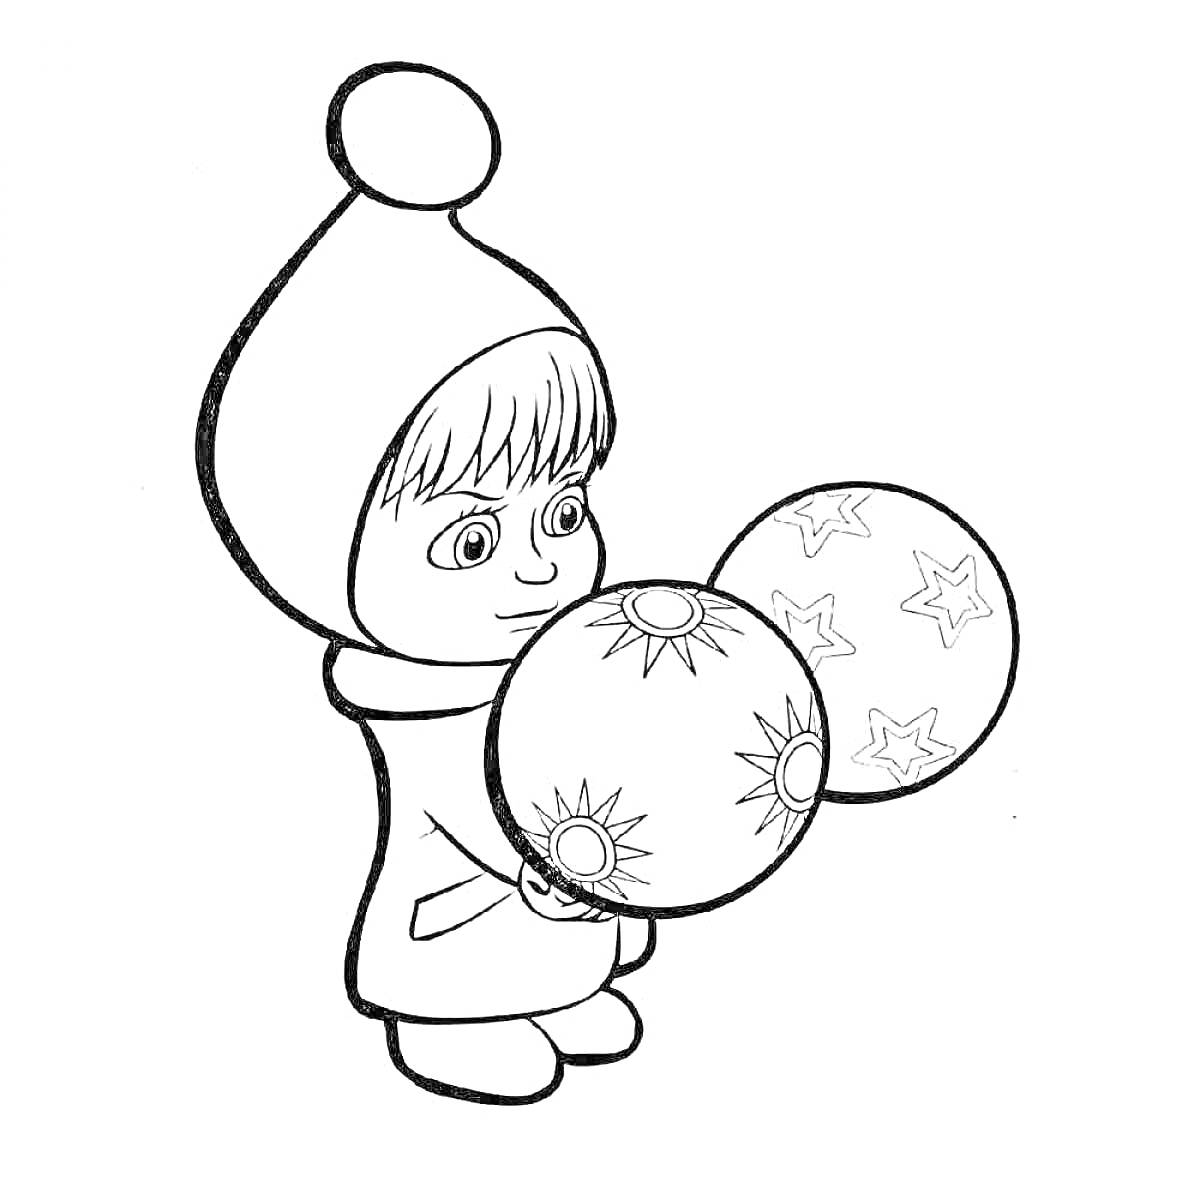 Раскраска Девочка в шапке с двумя шарами (солнышко и звёзды) в руках